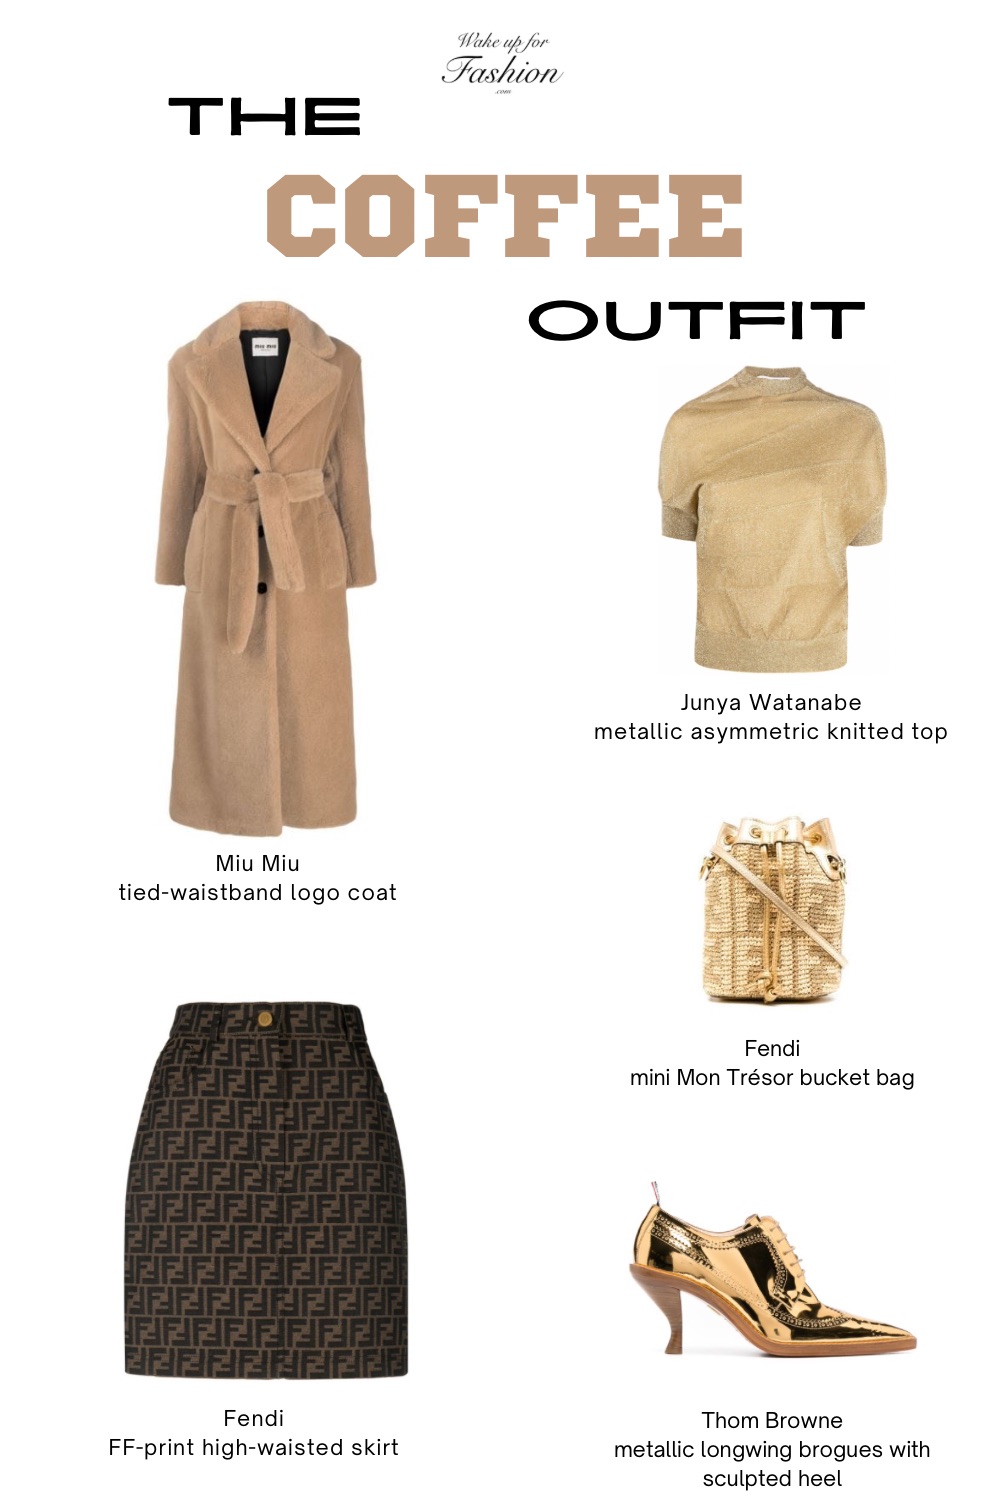 Women’s beige outfit with coat, top, skirt, bucket bag and heels.